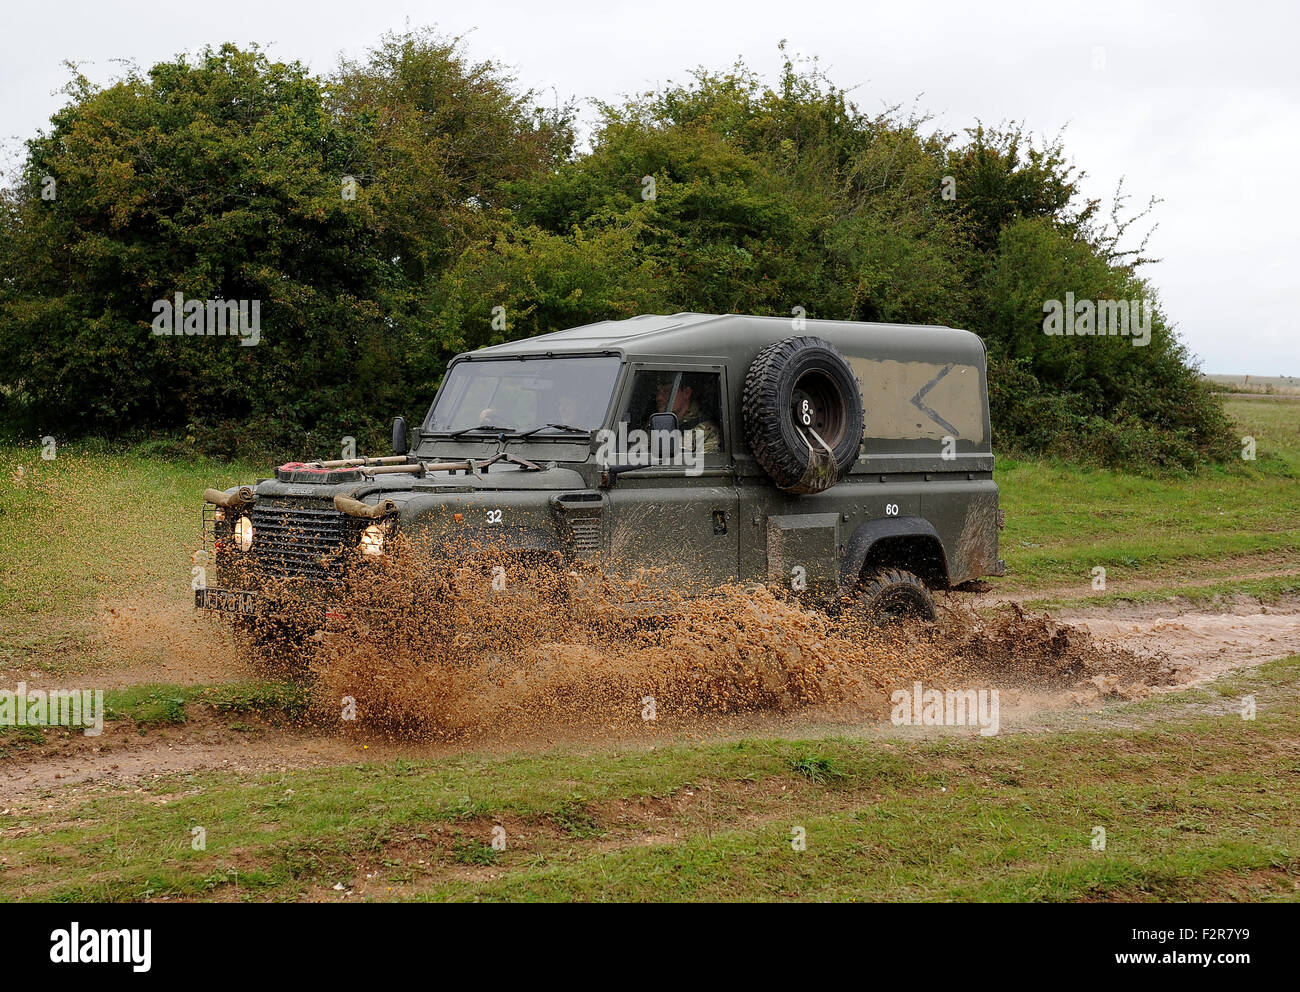 British Army Land Rover, Britain, UK Stock Photo